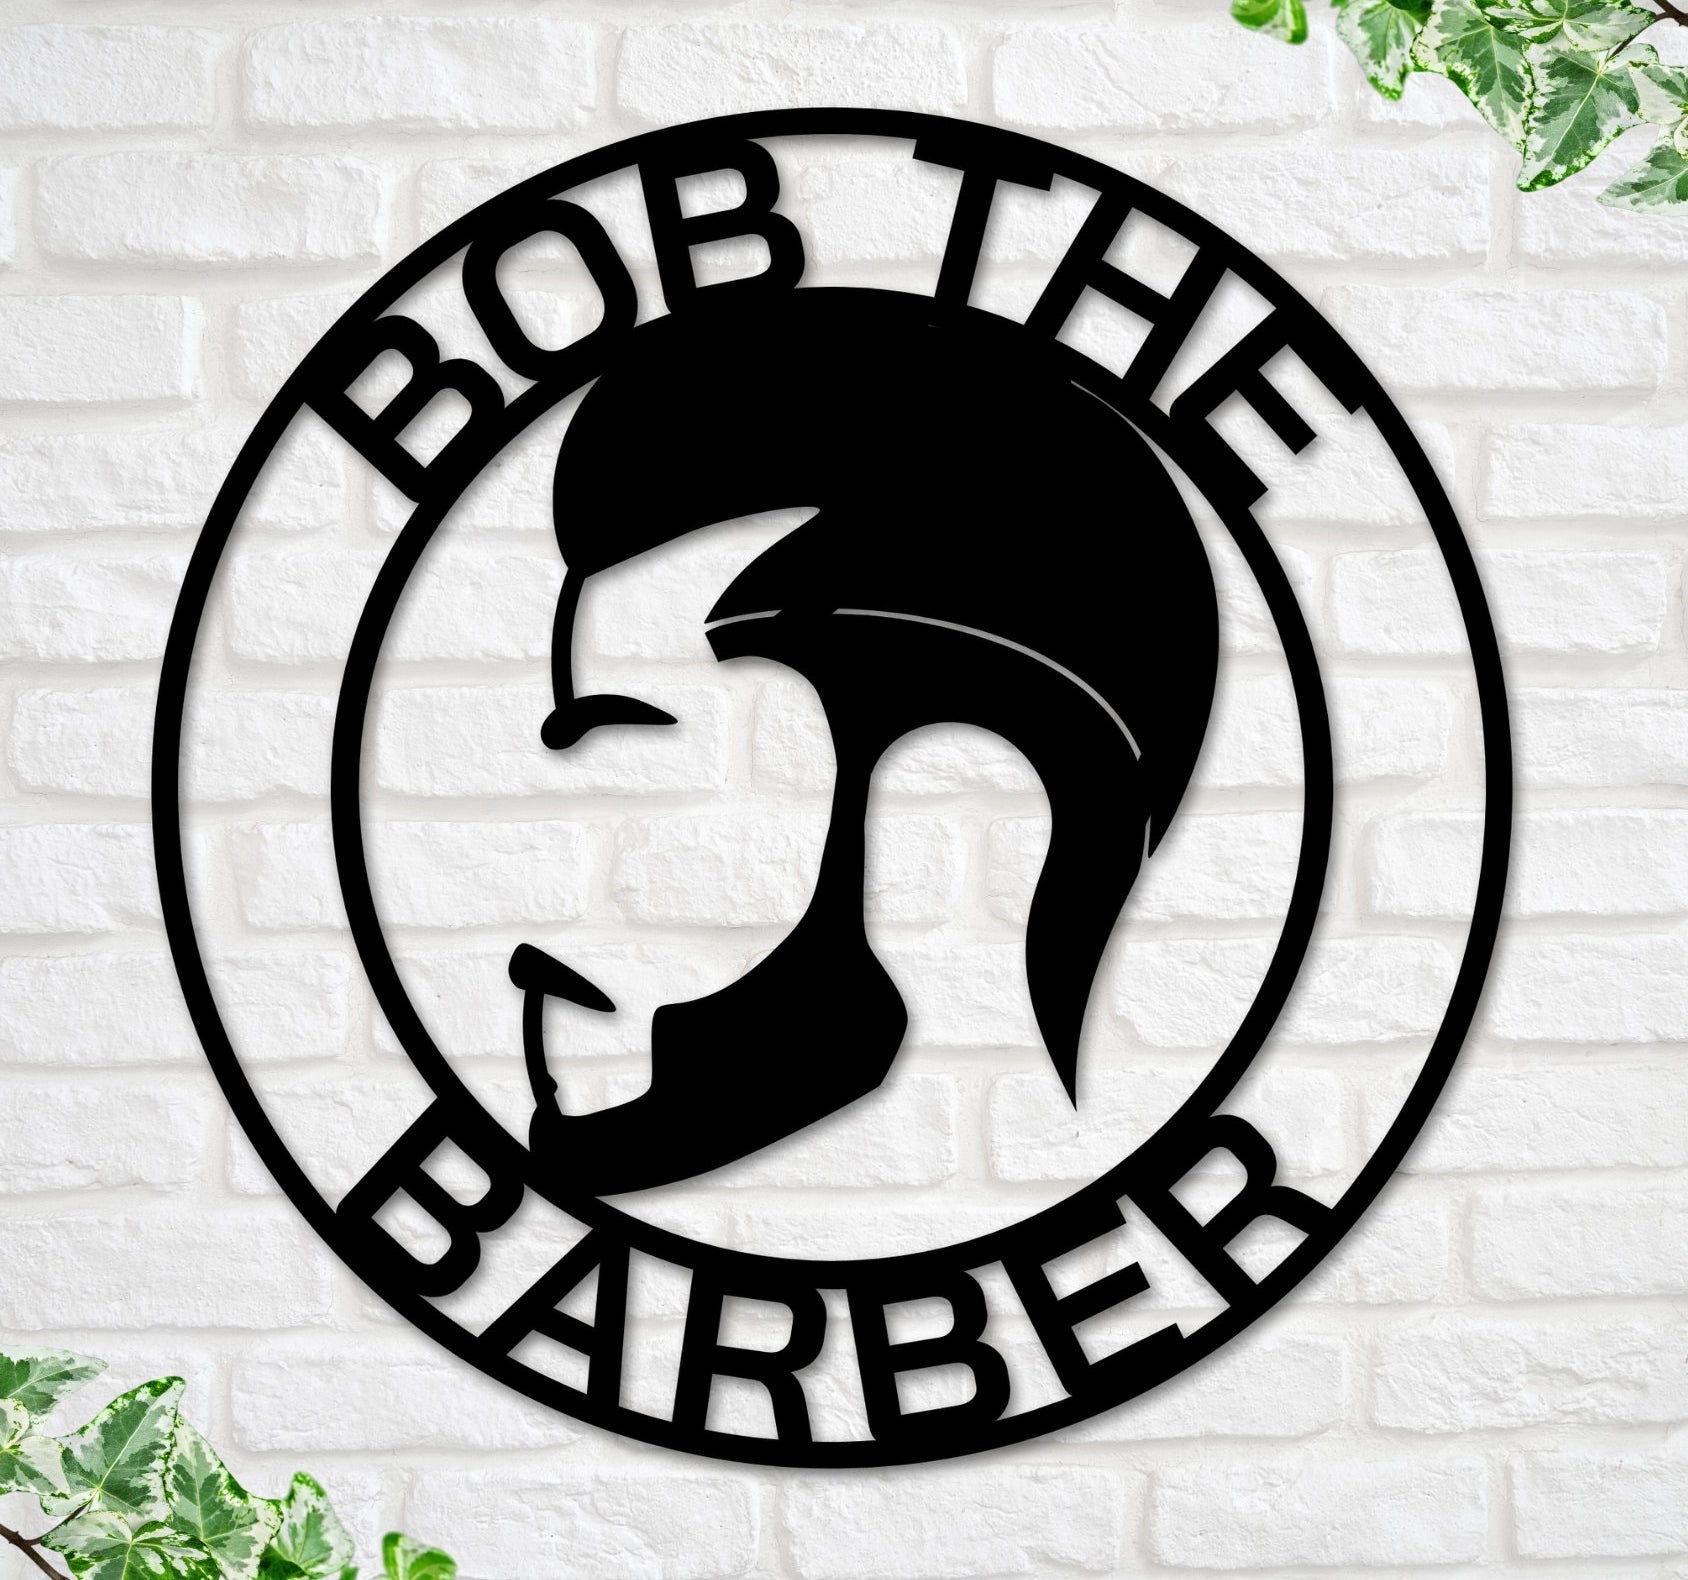 Barber Shop Sign - Personalized Barber Sign - Men's Barber Shop Decor - Custom Men's Hair Salon Shop Metal Sign